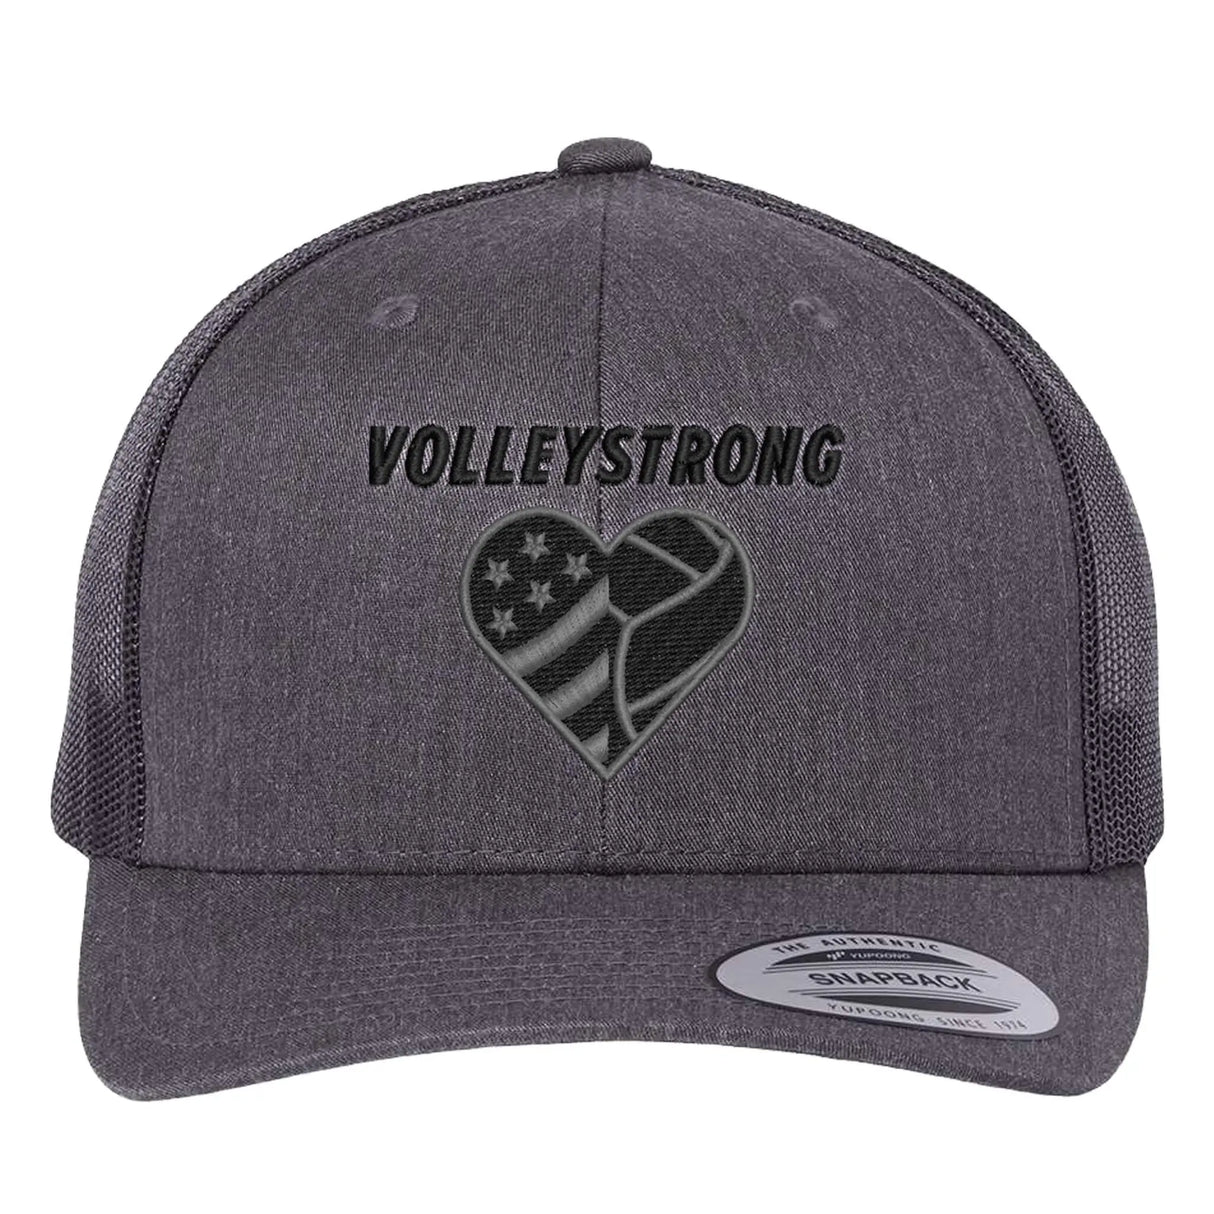 Volleystrong Classic Trucker Hat Dark Heather Grey